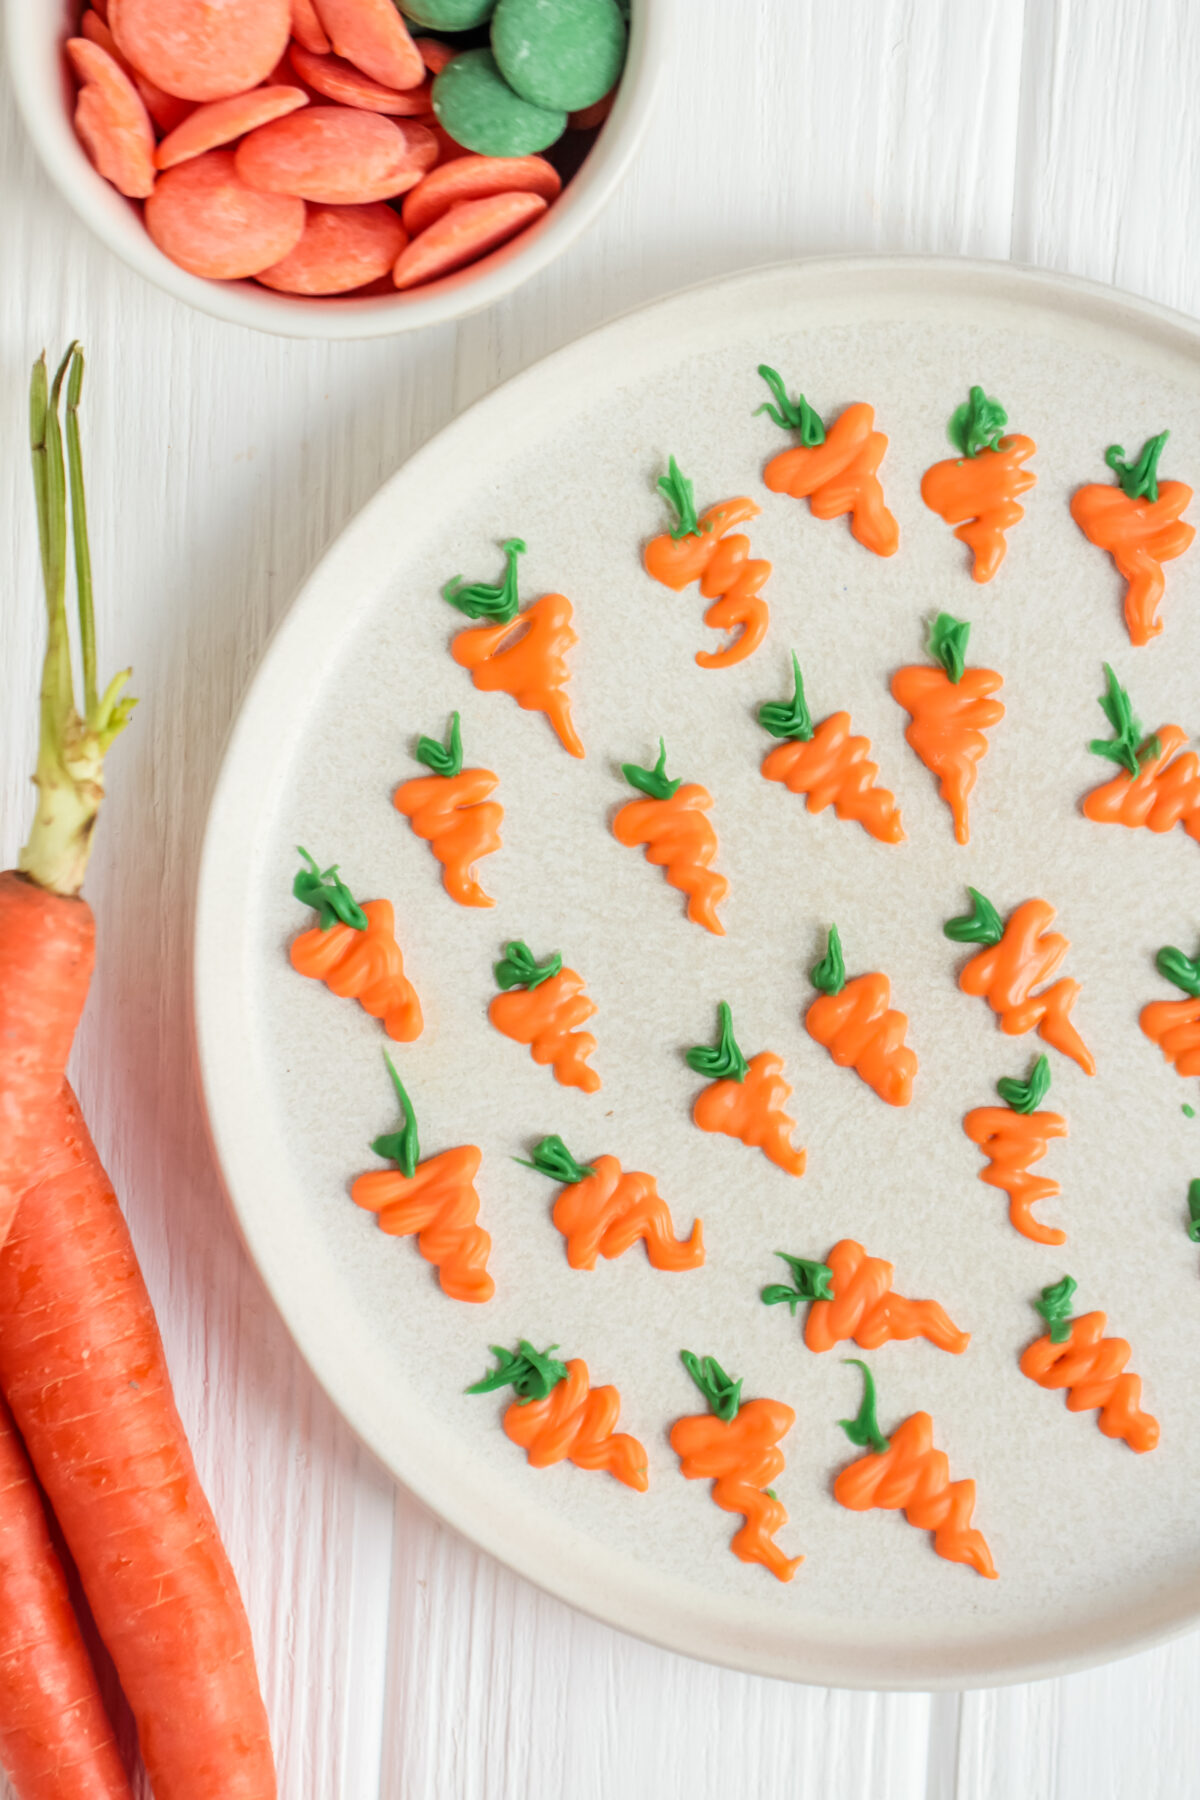 Candy melt carrots